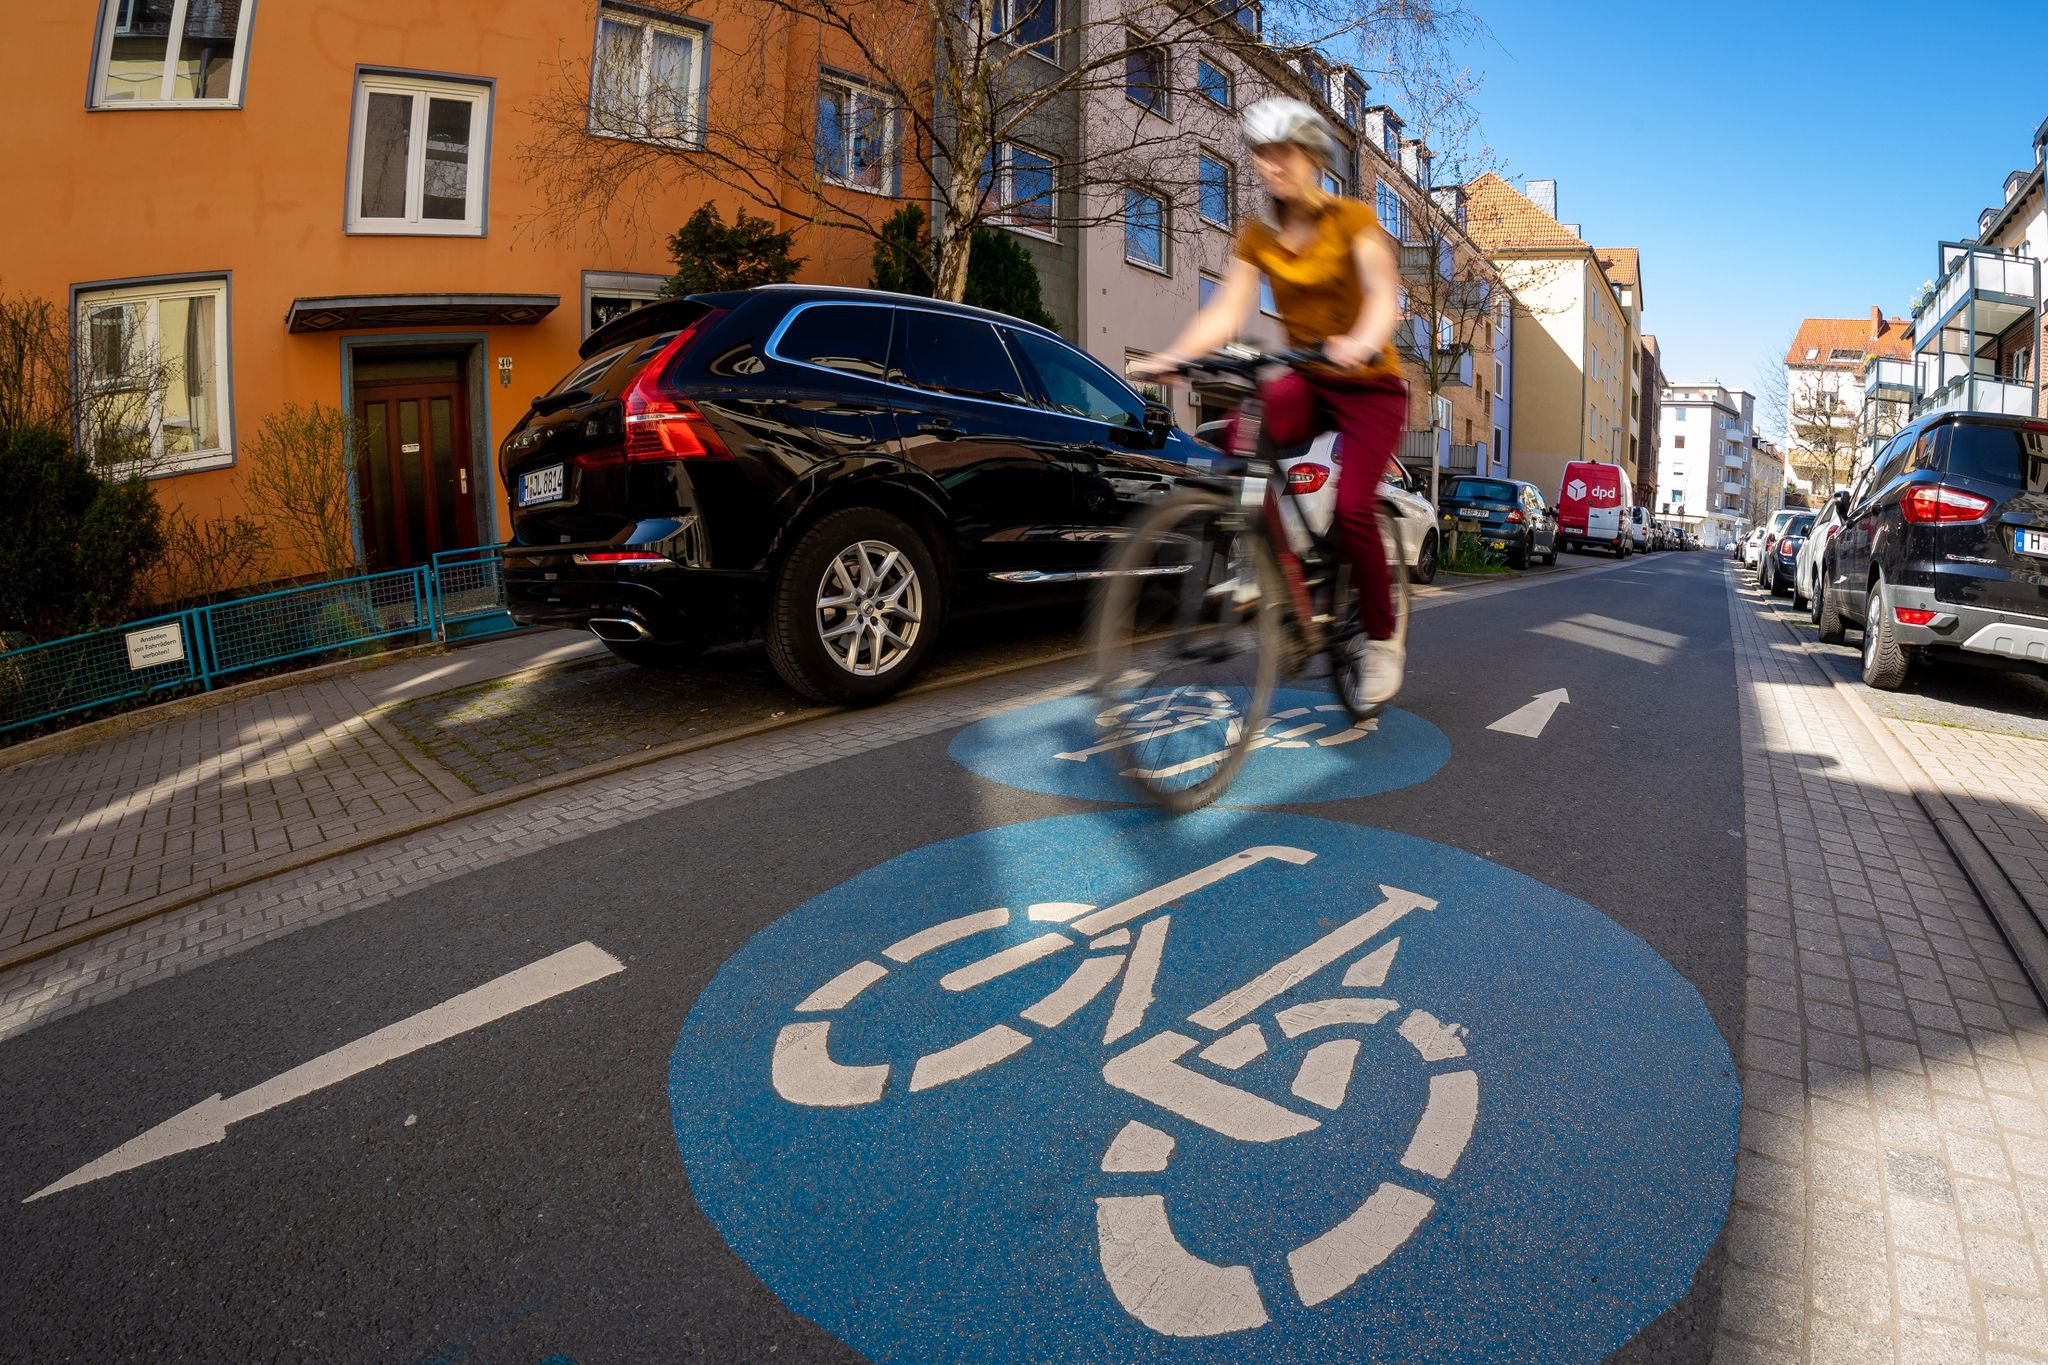 Fahrradstraßen sind für Fahrräder, E-Scooter und Pedelecs gedacht, dürfen jedoch auch von Autos und Motorrädern befahren werden, sofern Zusatzschilder dies erlauben.